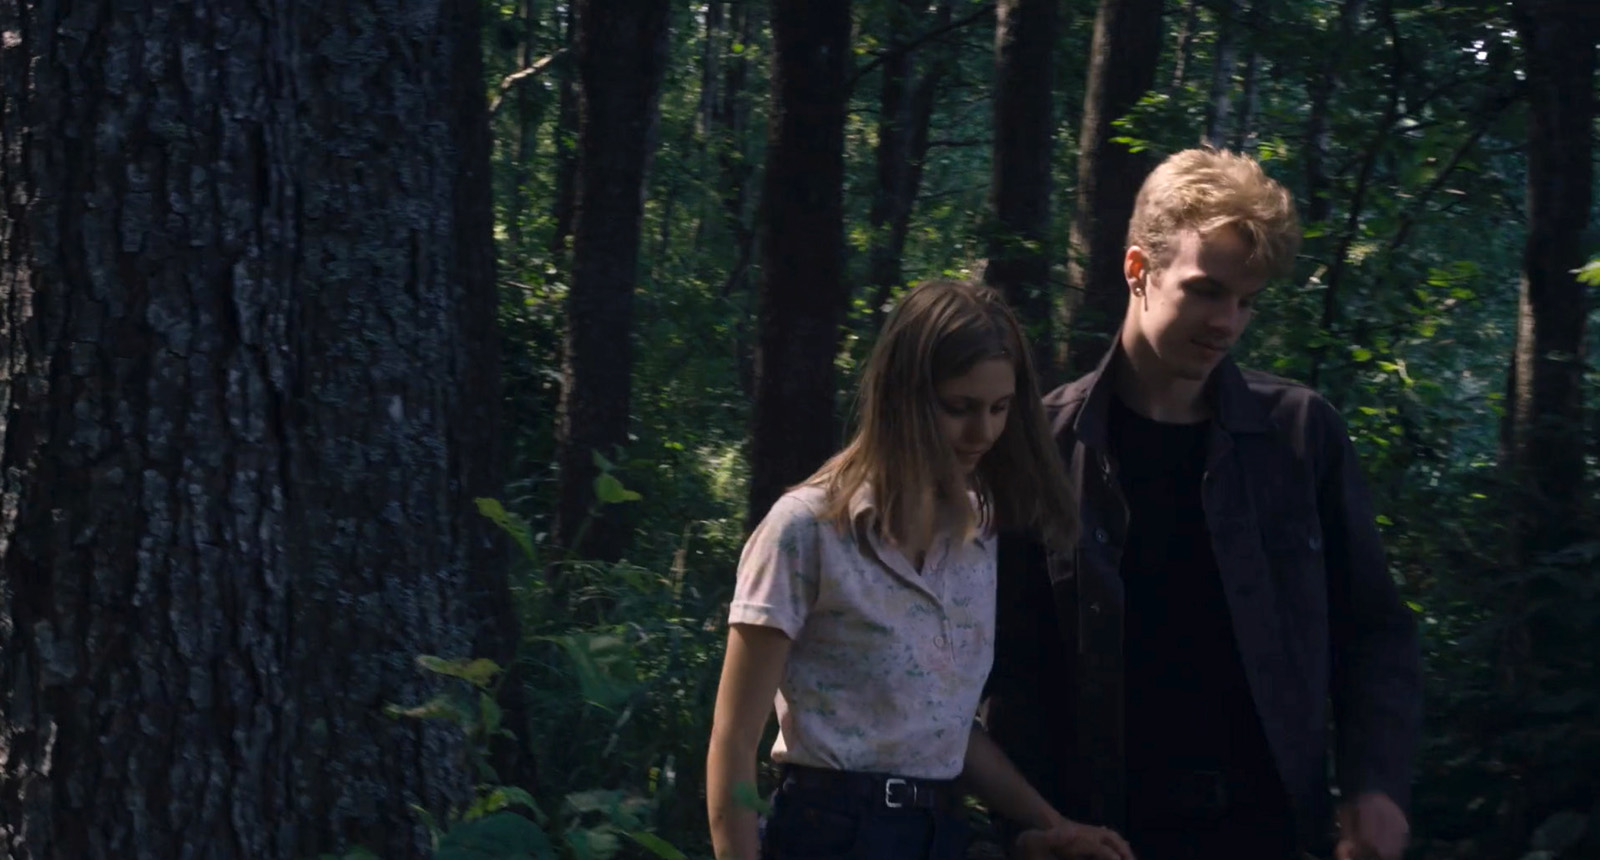 Un jeune couple (une femme et un homme) se promène dans la forêt